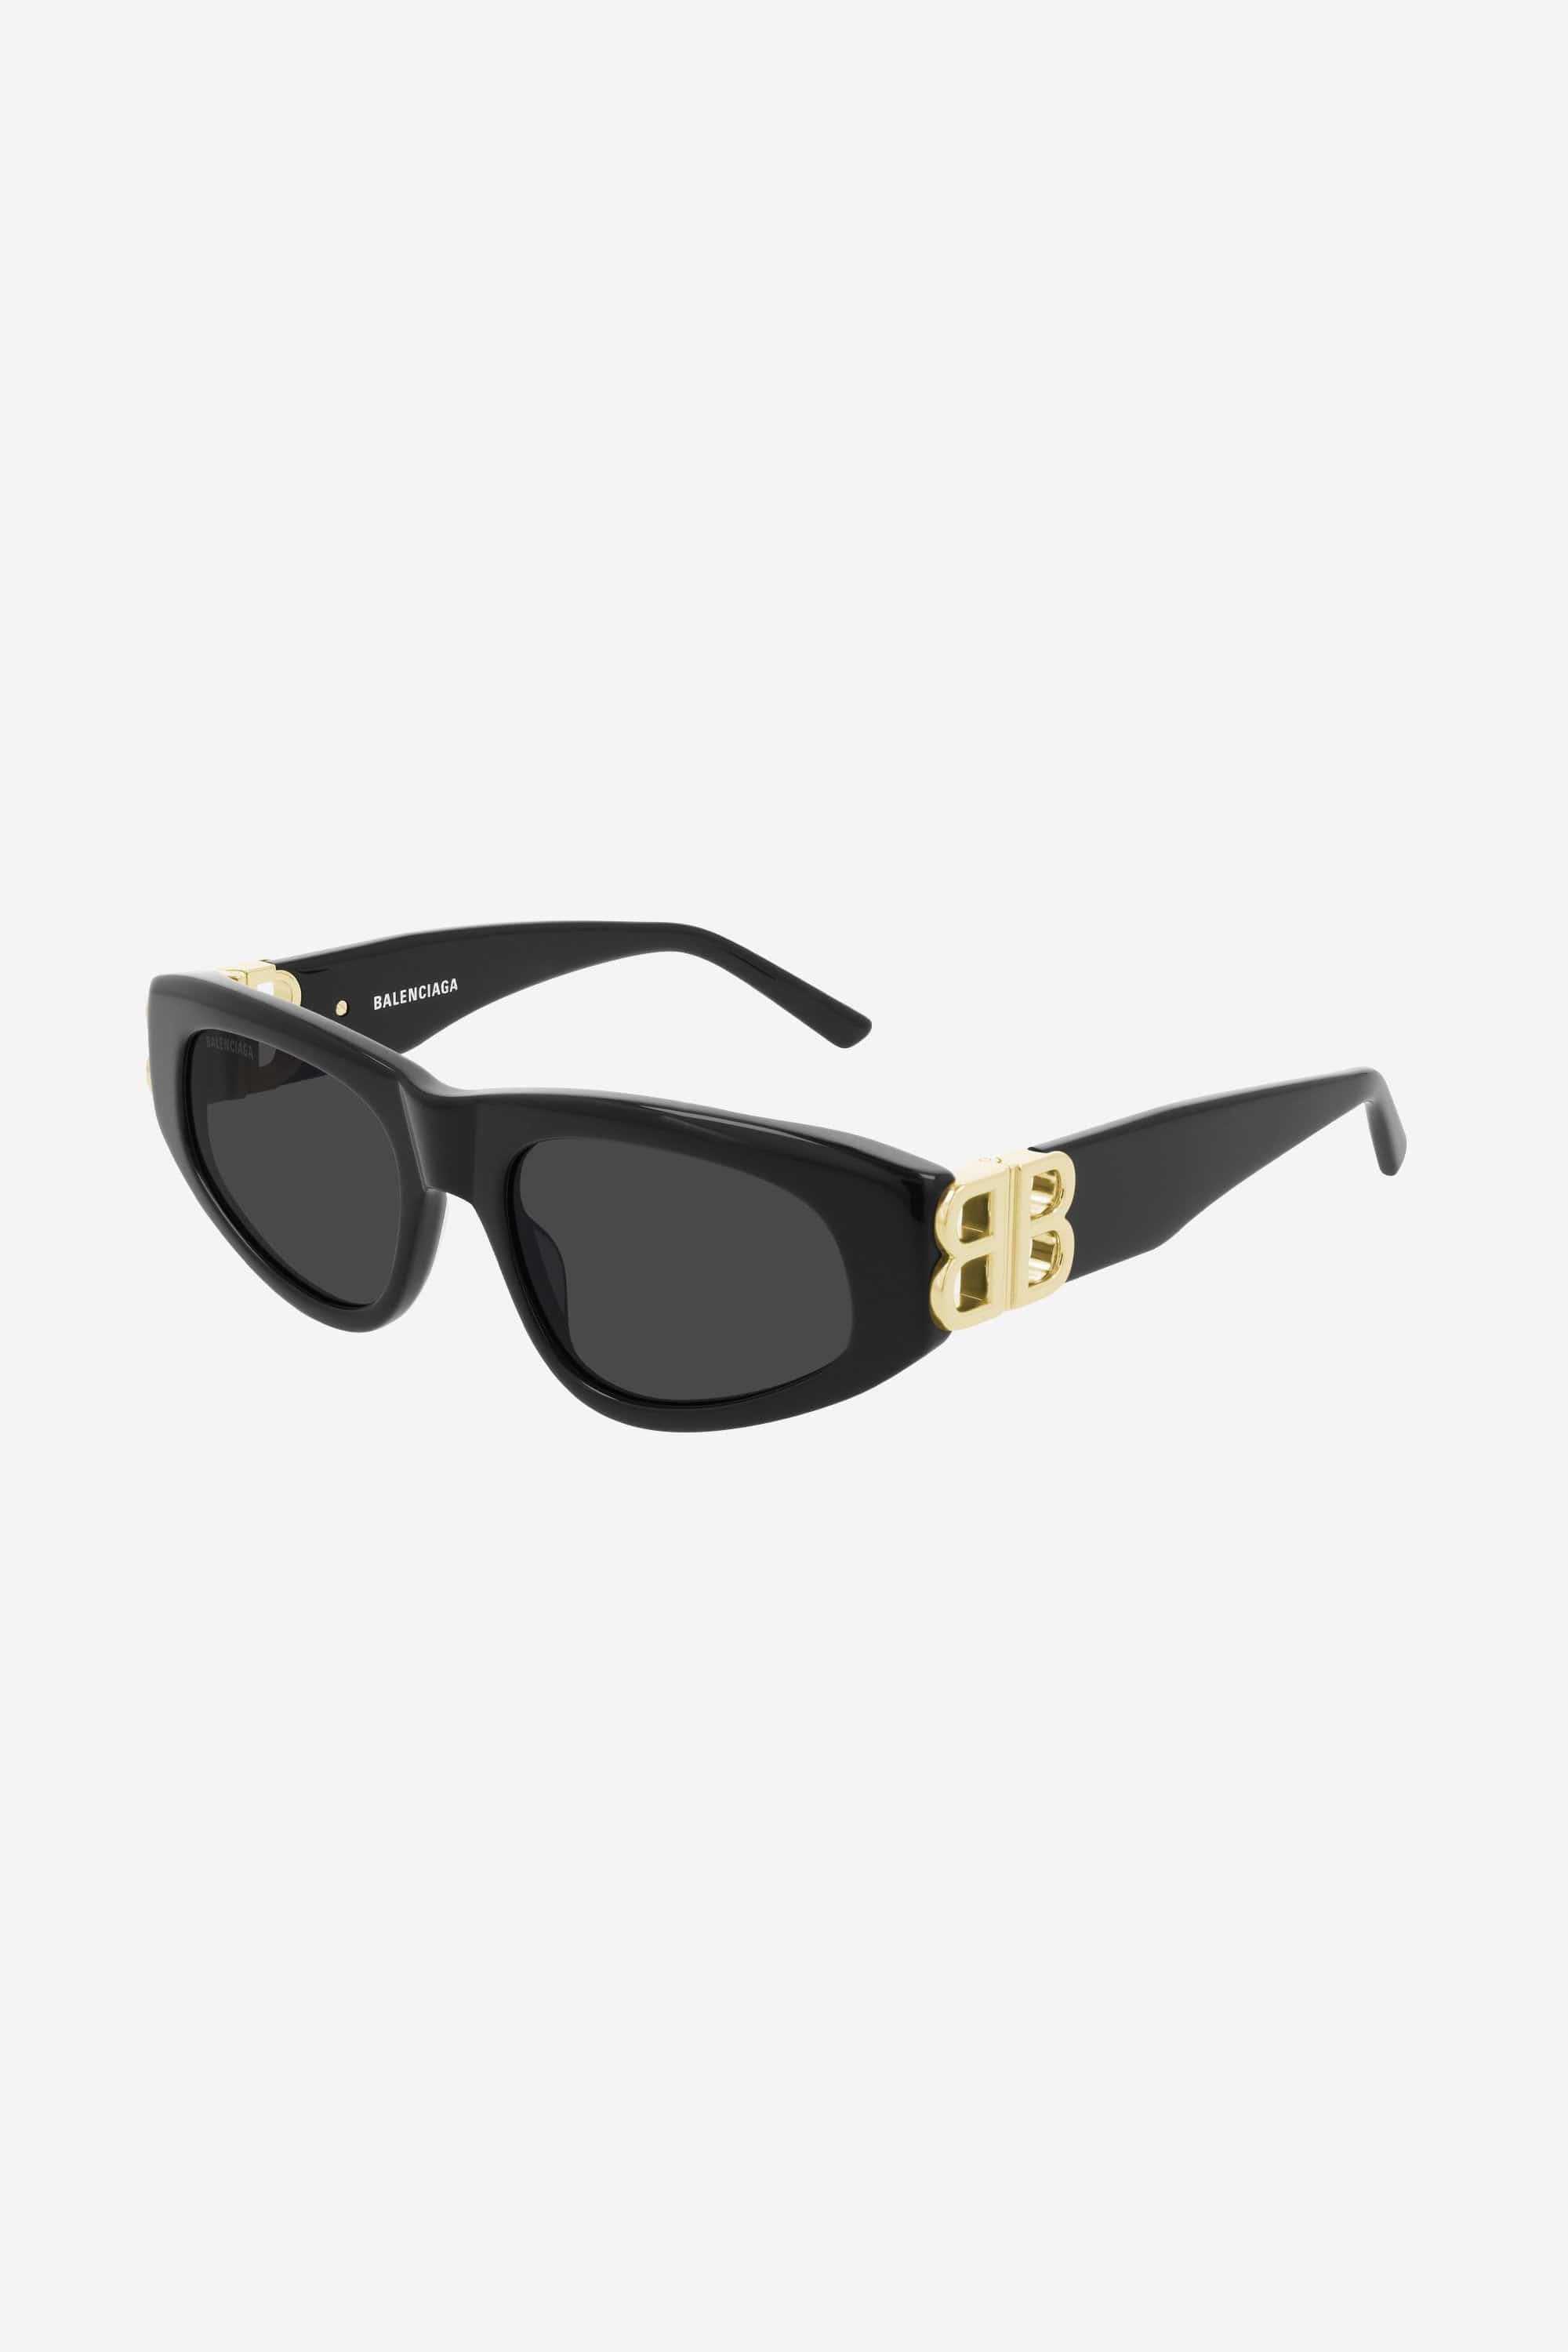 Balenciaga black cat-eye BB sunglasses - Eyewear Club